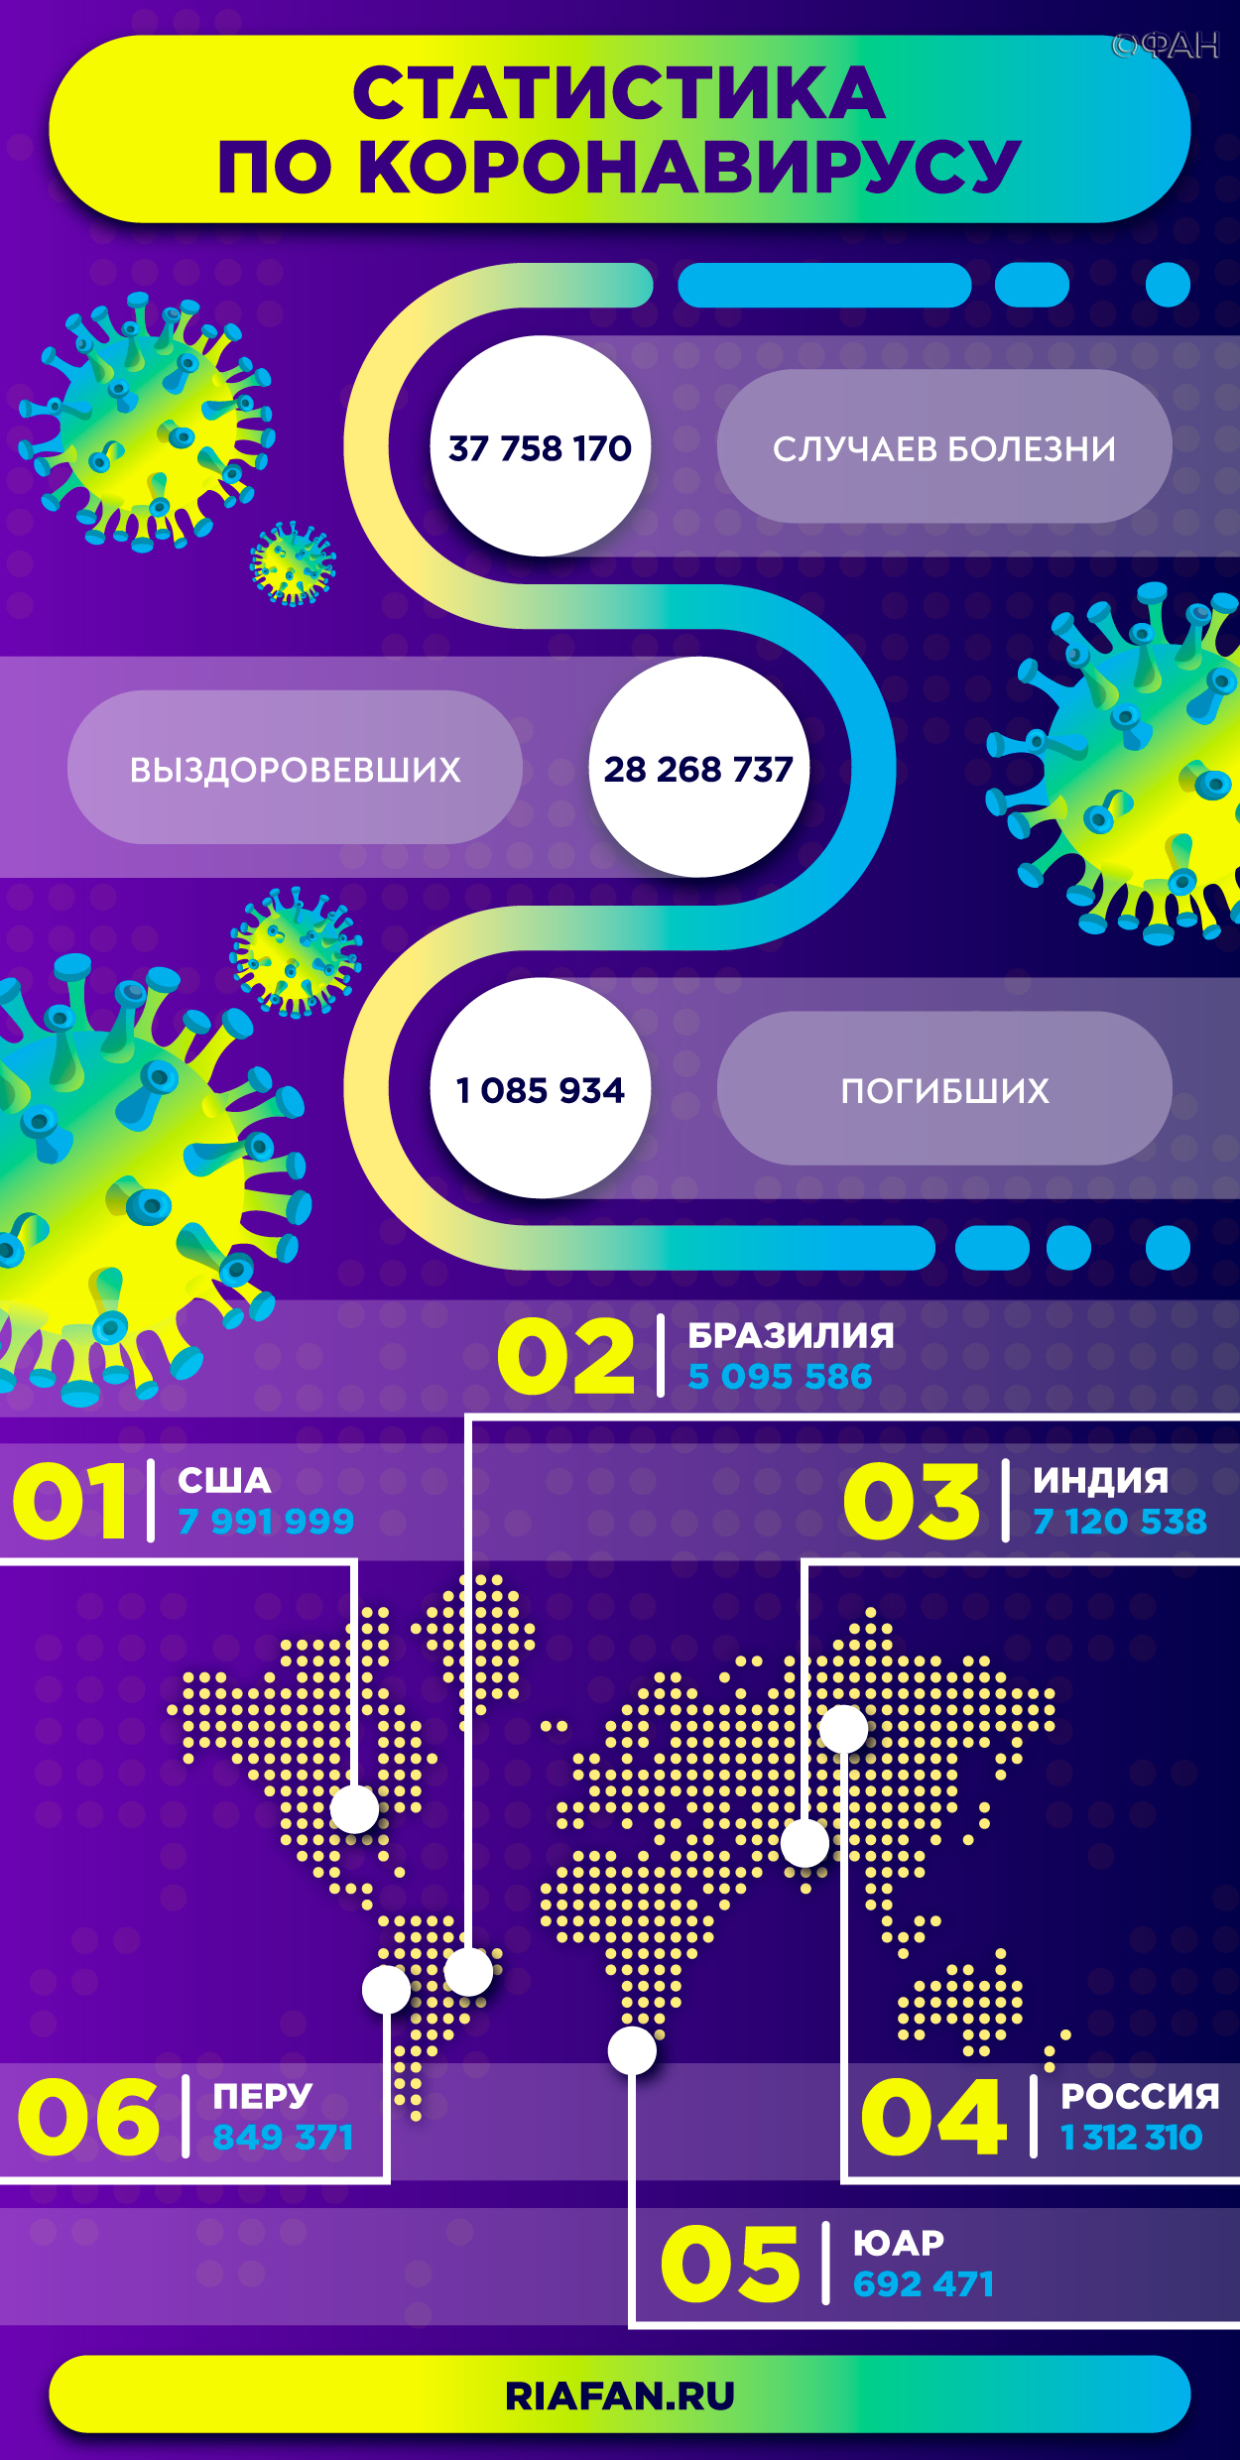 Более 12 тысяч россиян уже получили вакцину от коронавируса